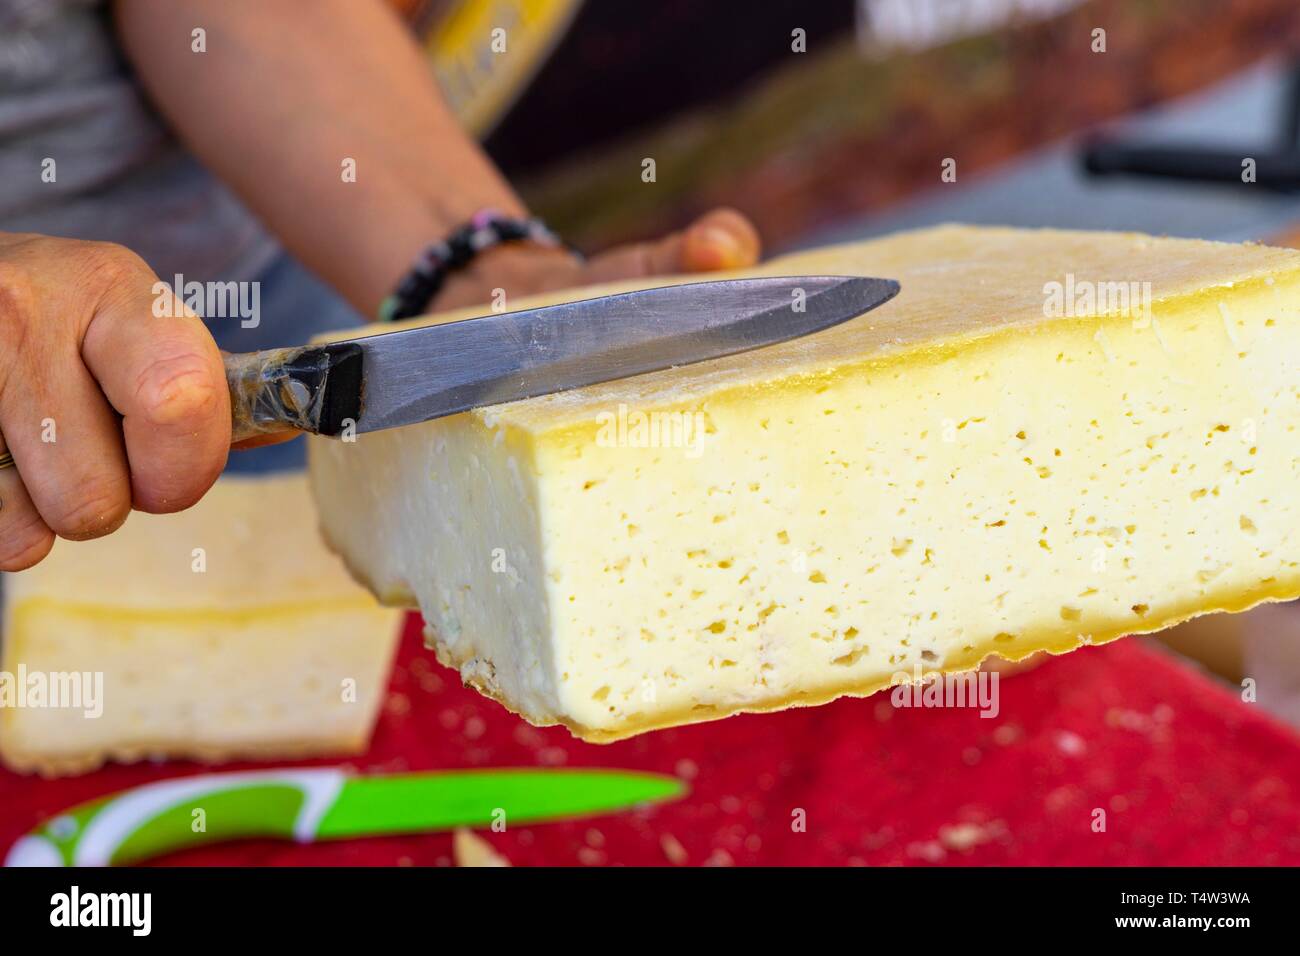 El queso tradicional, el mercado al aire libre, Barbastro, , cordillera de los Prepirineos, España. Foto de stock